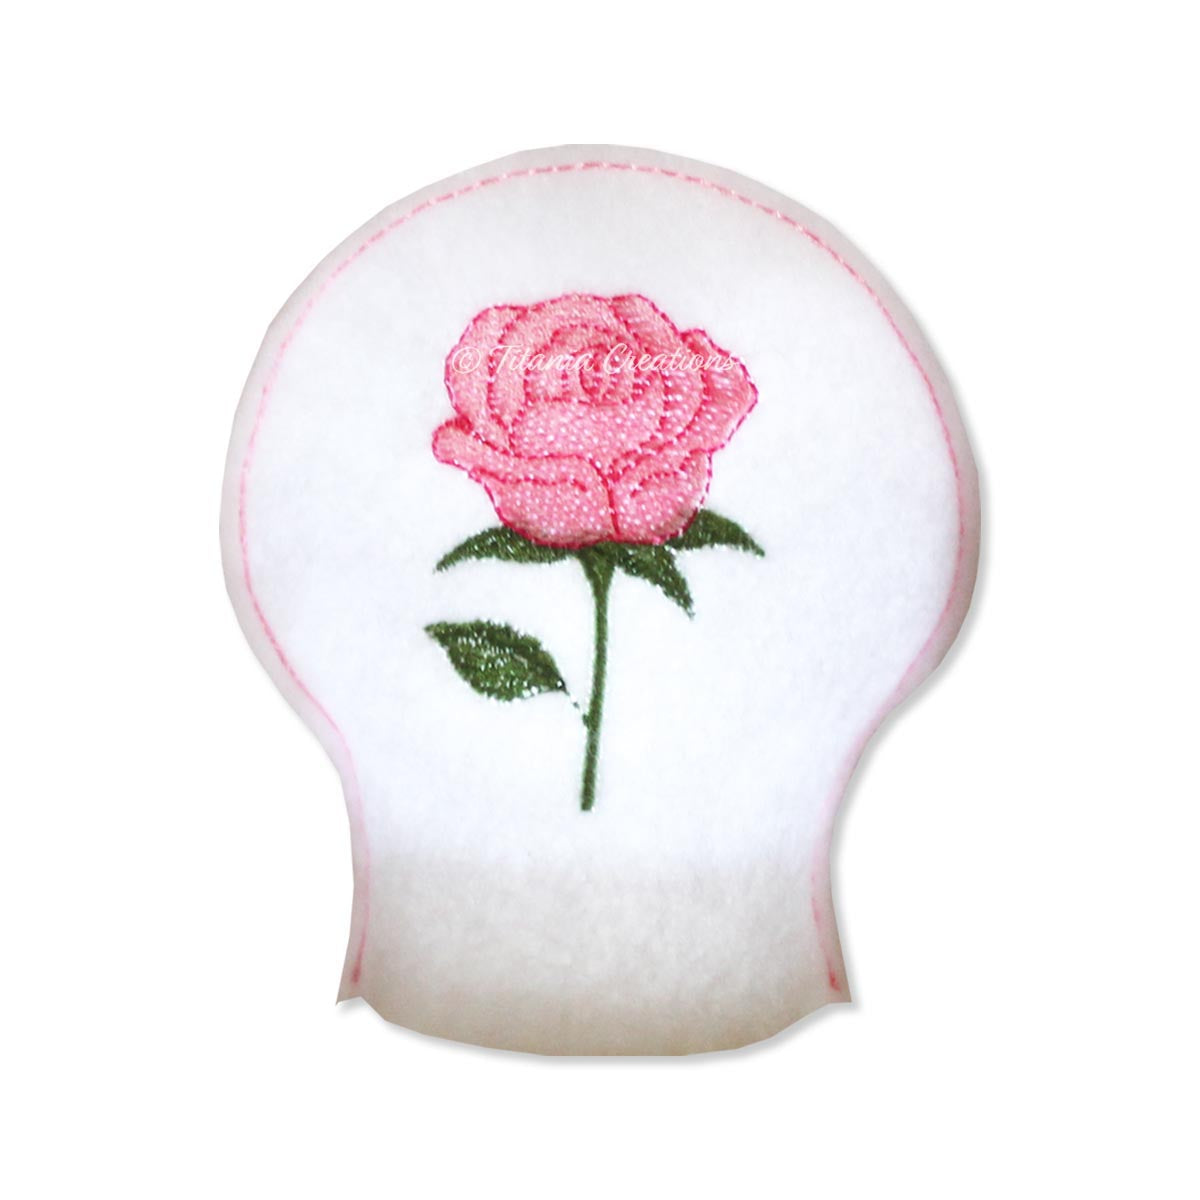 ITH Rose Flower for June Tea Light Cover 4x4